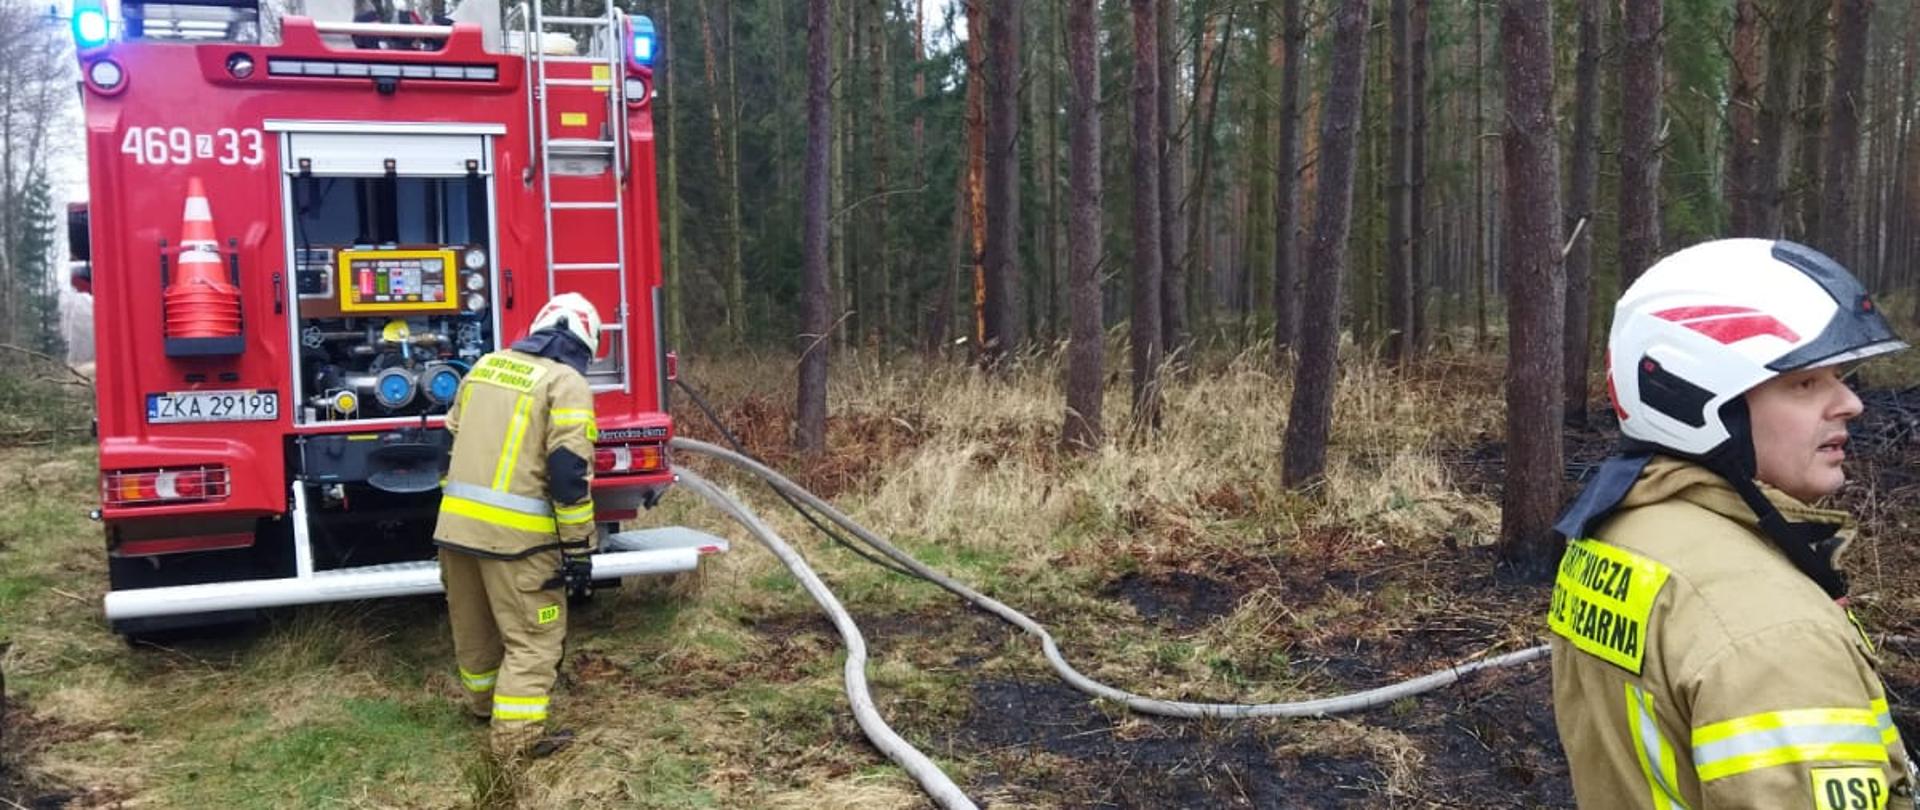 Pojazd straży pożarnej oraz strażacy w czasie działań gaśniczych w lesie